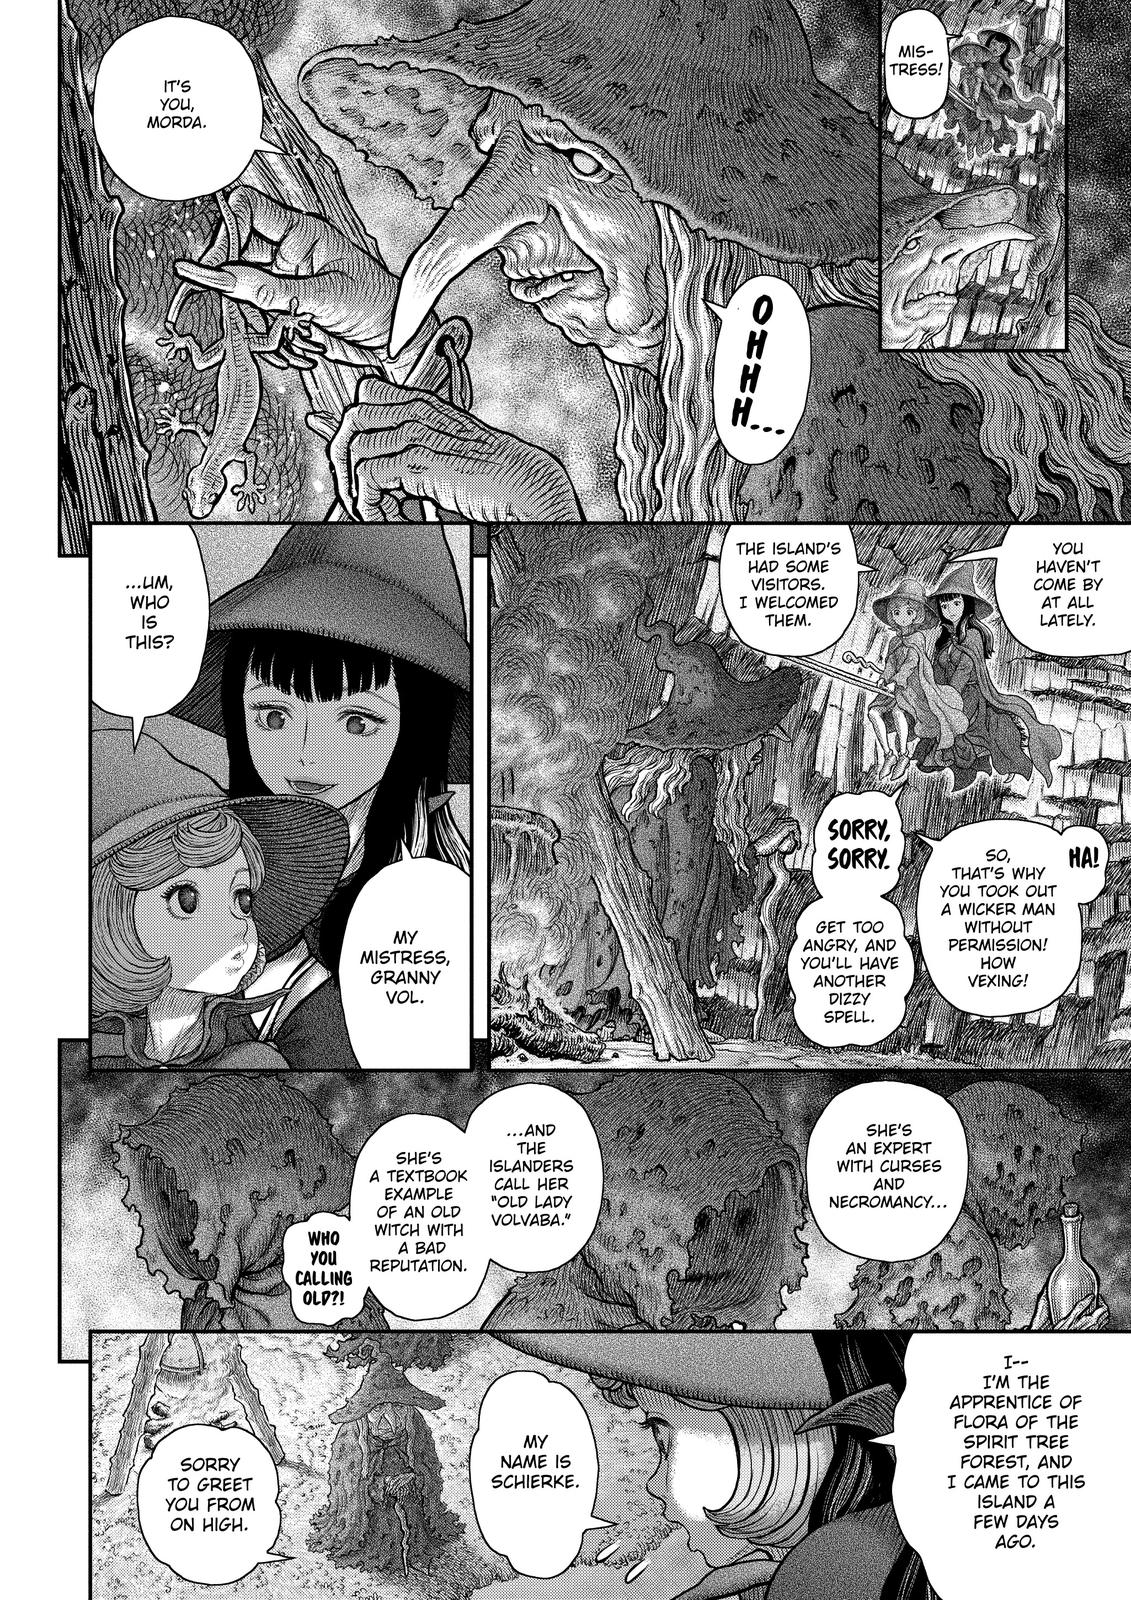 Berserk Manga Chapter 361 image 13